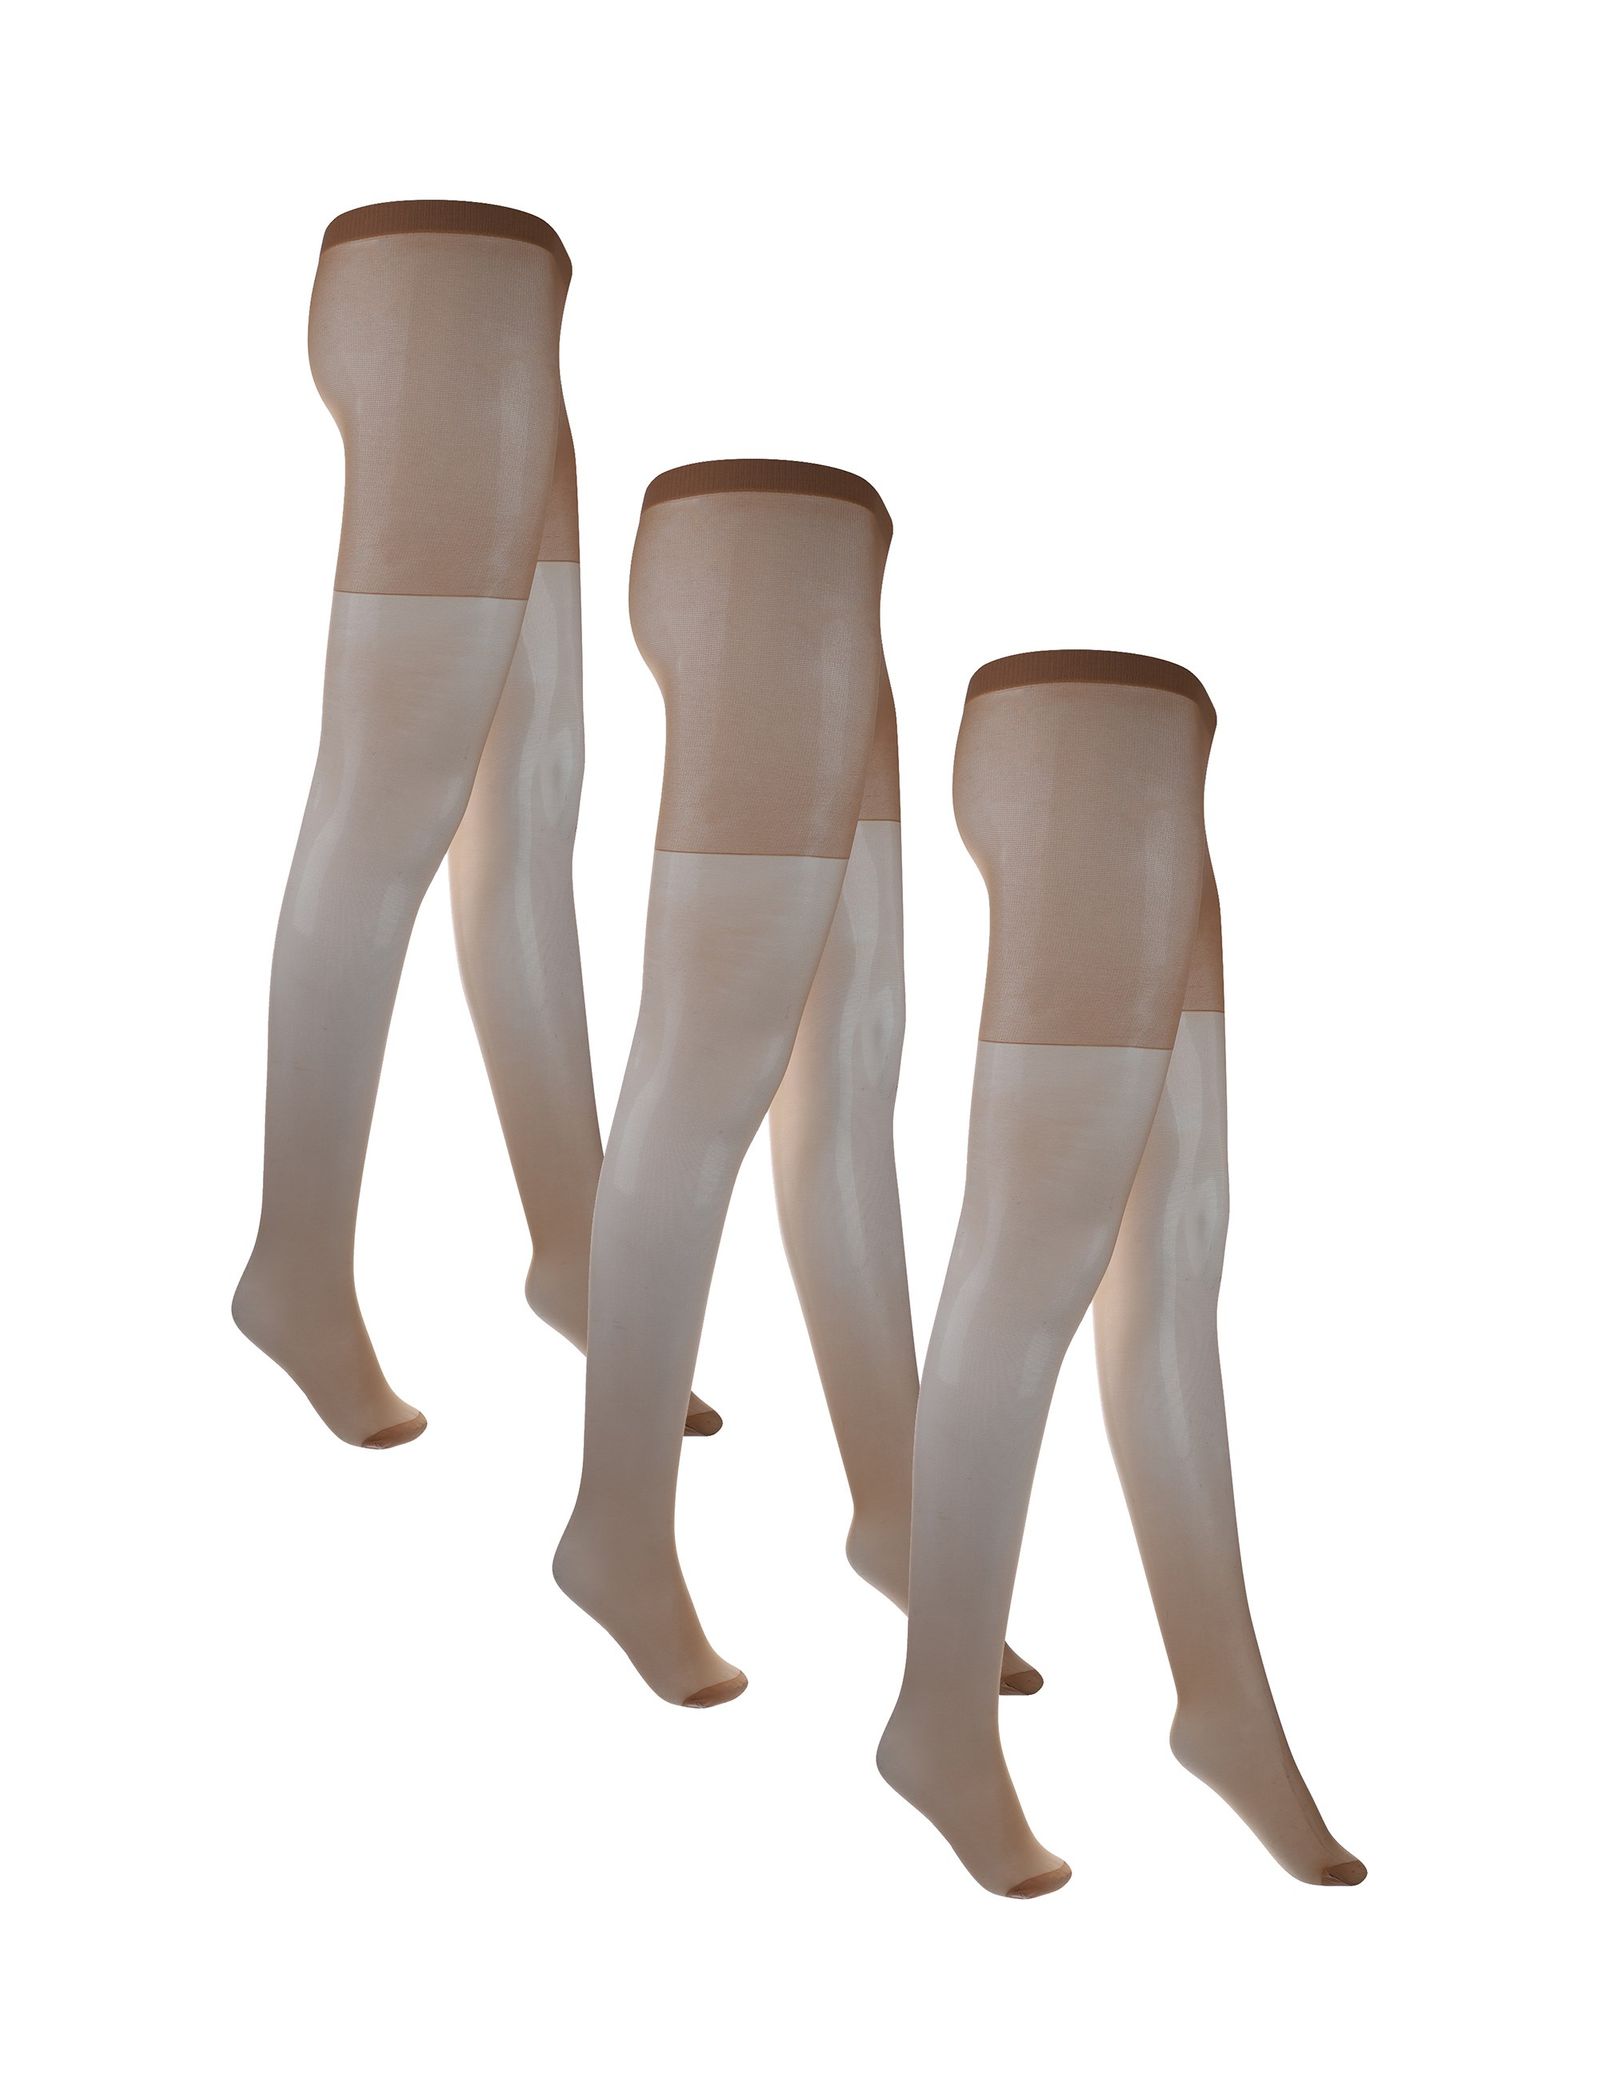 جوراب شلواری شفاف زنانه بسته 3 عددی - دبنهامز - رنگ پا - 2